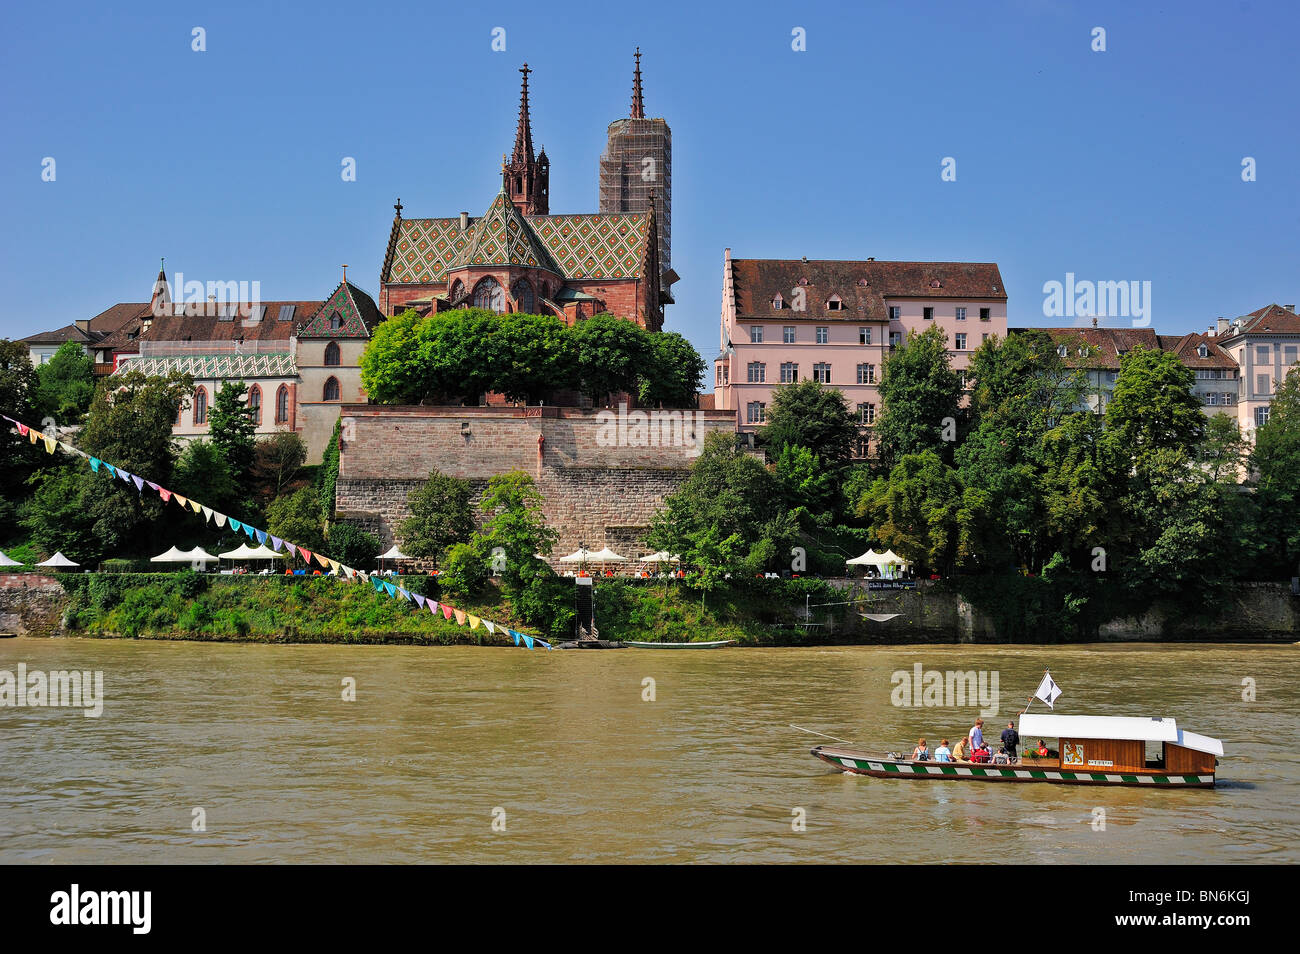 Kabel-Fähre über den Rhein in Basel (Basel, Basel, Basilea) Schweiz mit Basler Münster (Kathedrale) im Hintergrund Stockfoto